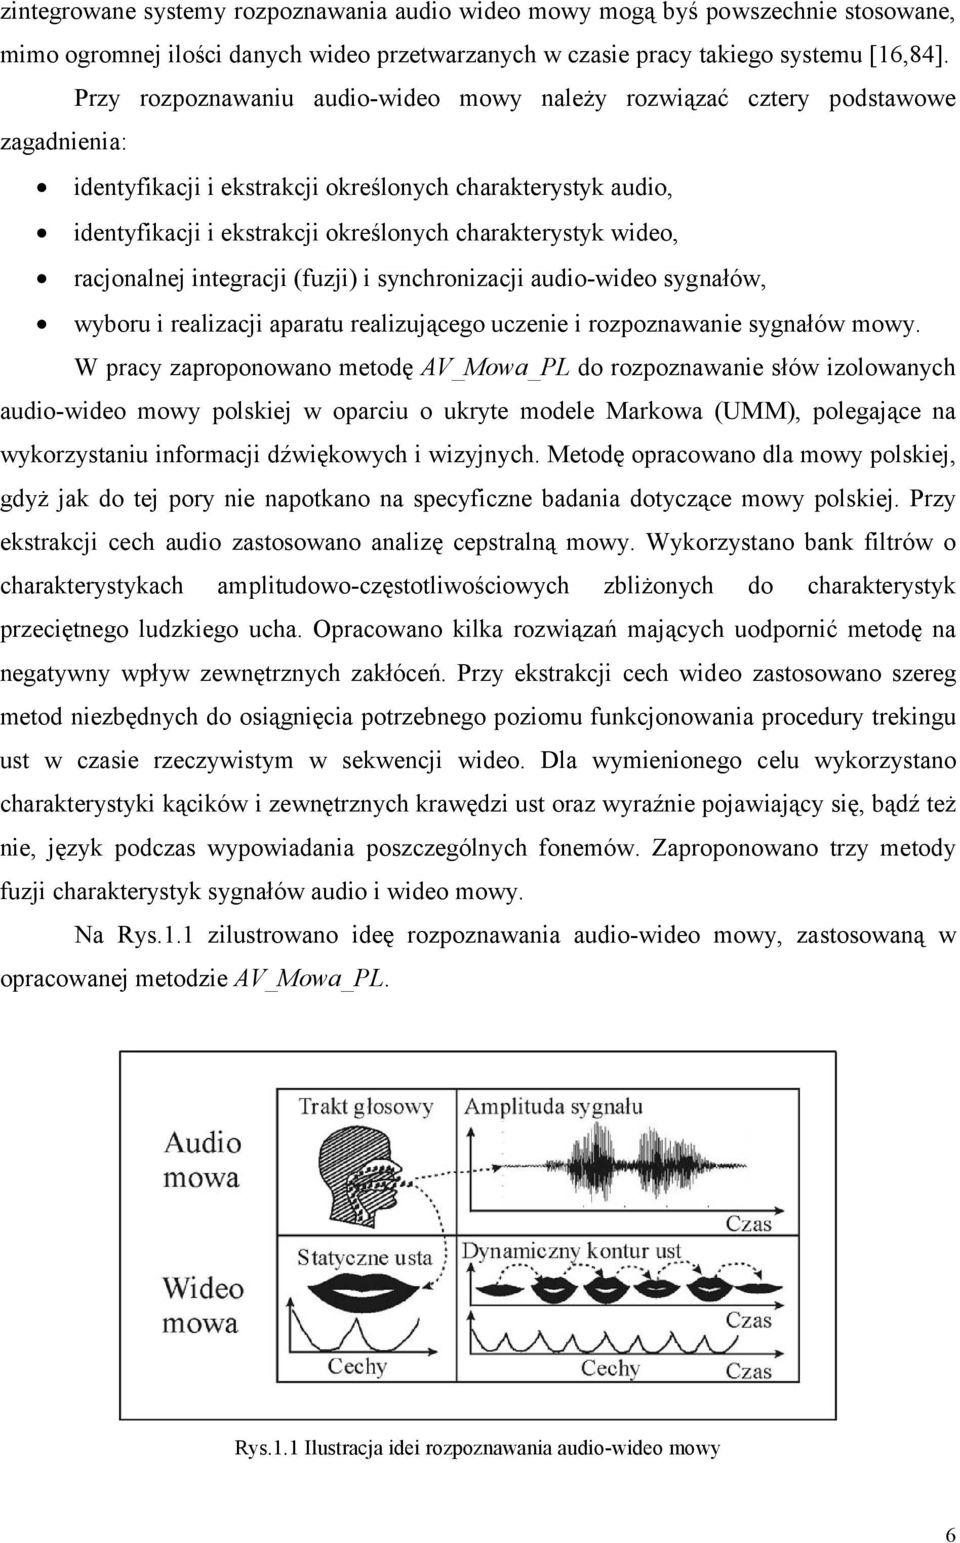 acjonalnej integacji (fuzji) i synchonizacji audio-wideo sygnałów, wybou i ealizacji apaatu ealizującego uczenie i ozpoznawanie sygnałów mowy.